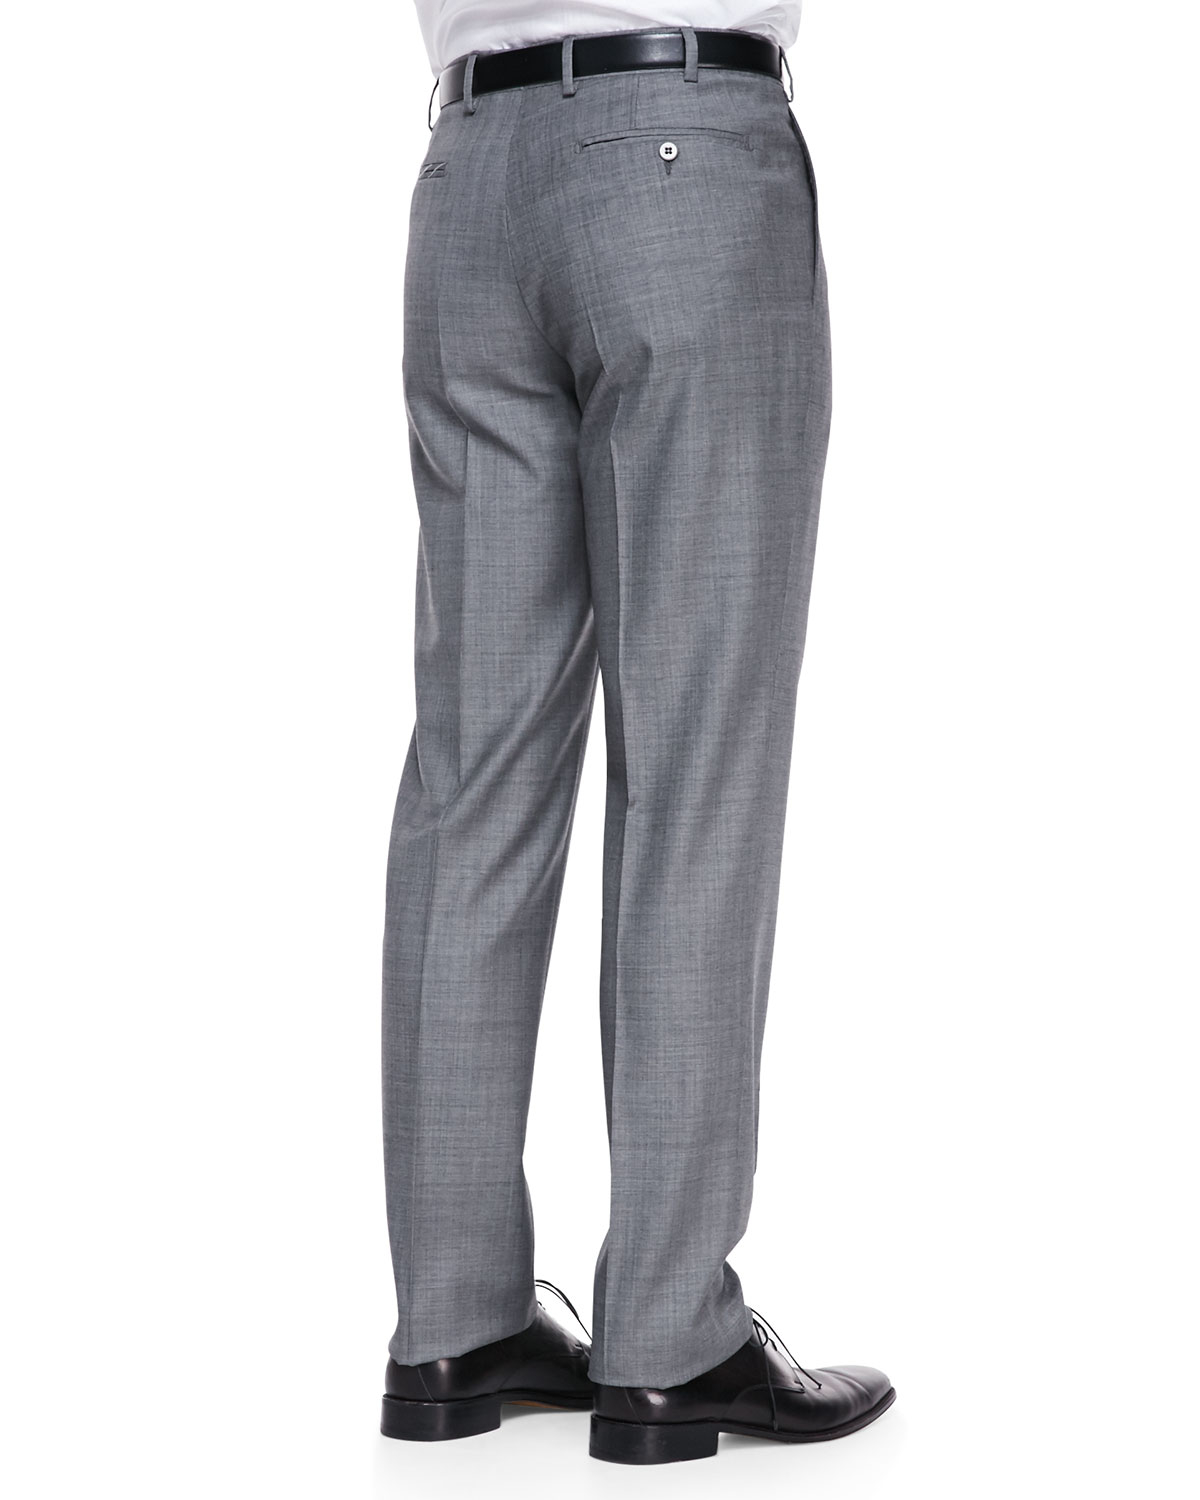 Lyst - Zanella Sharkskin Dress Pants Gray in Gray for Men